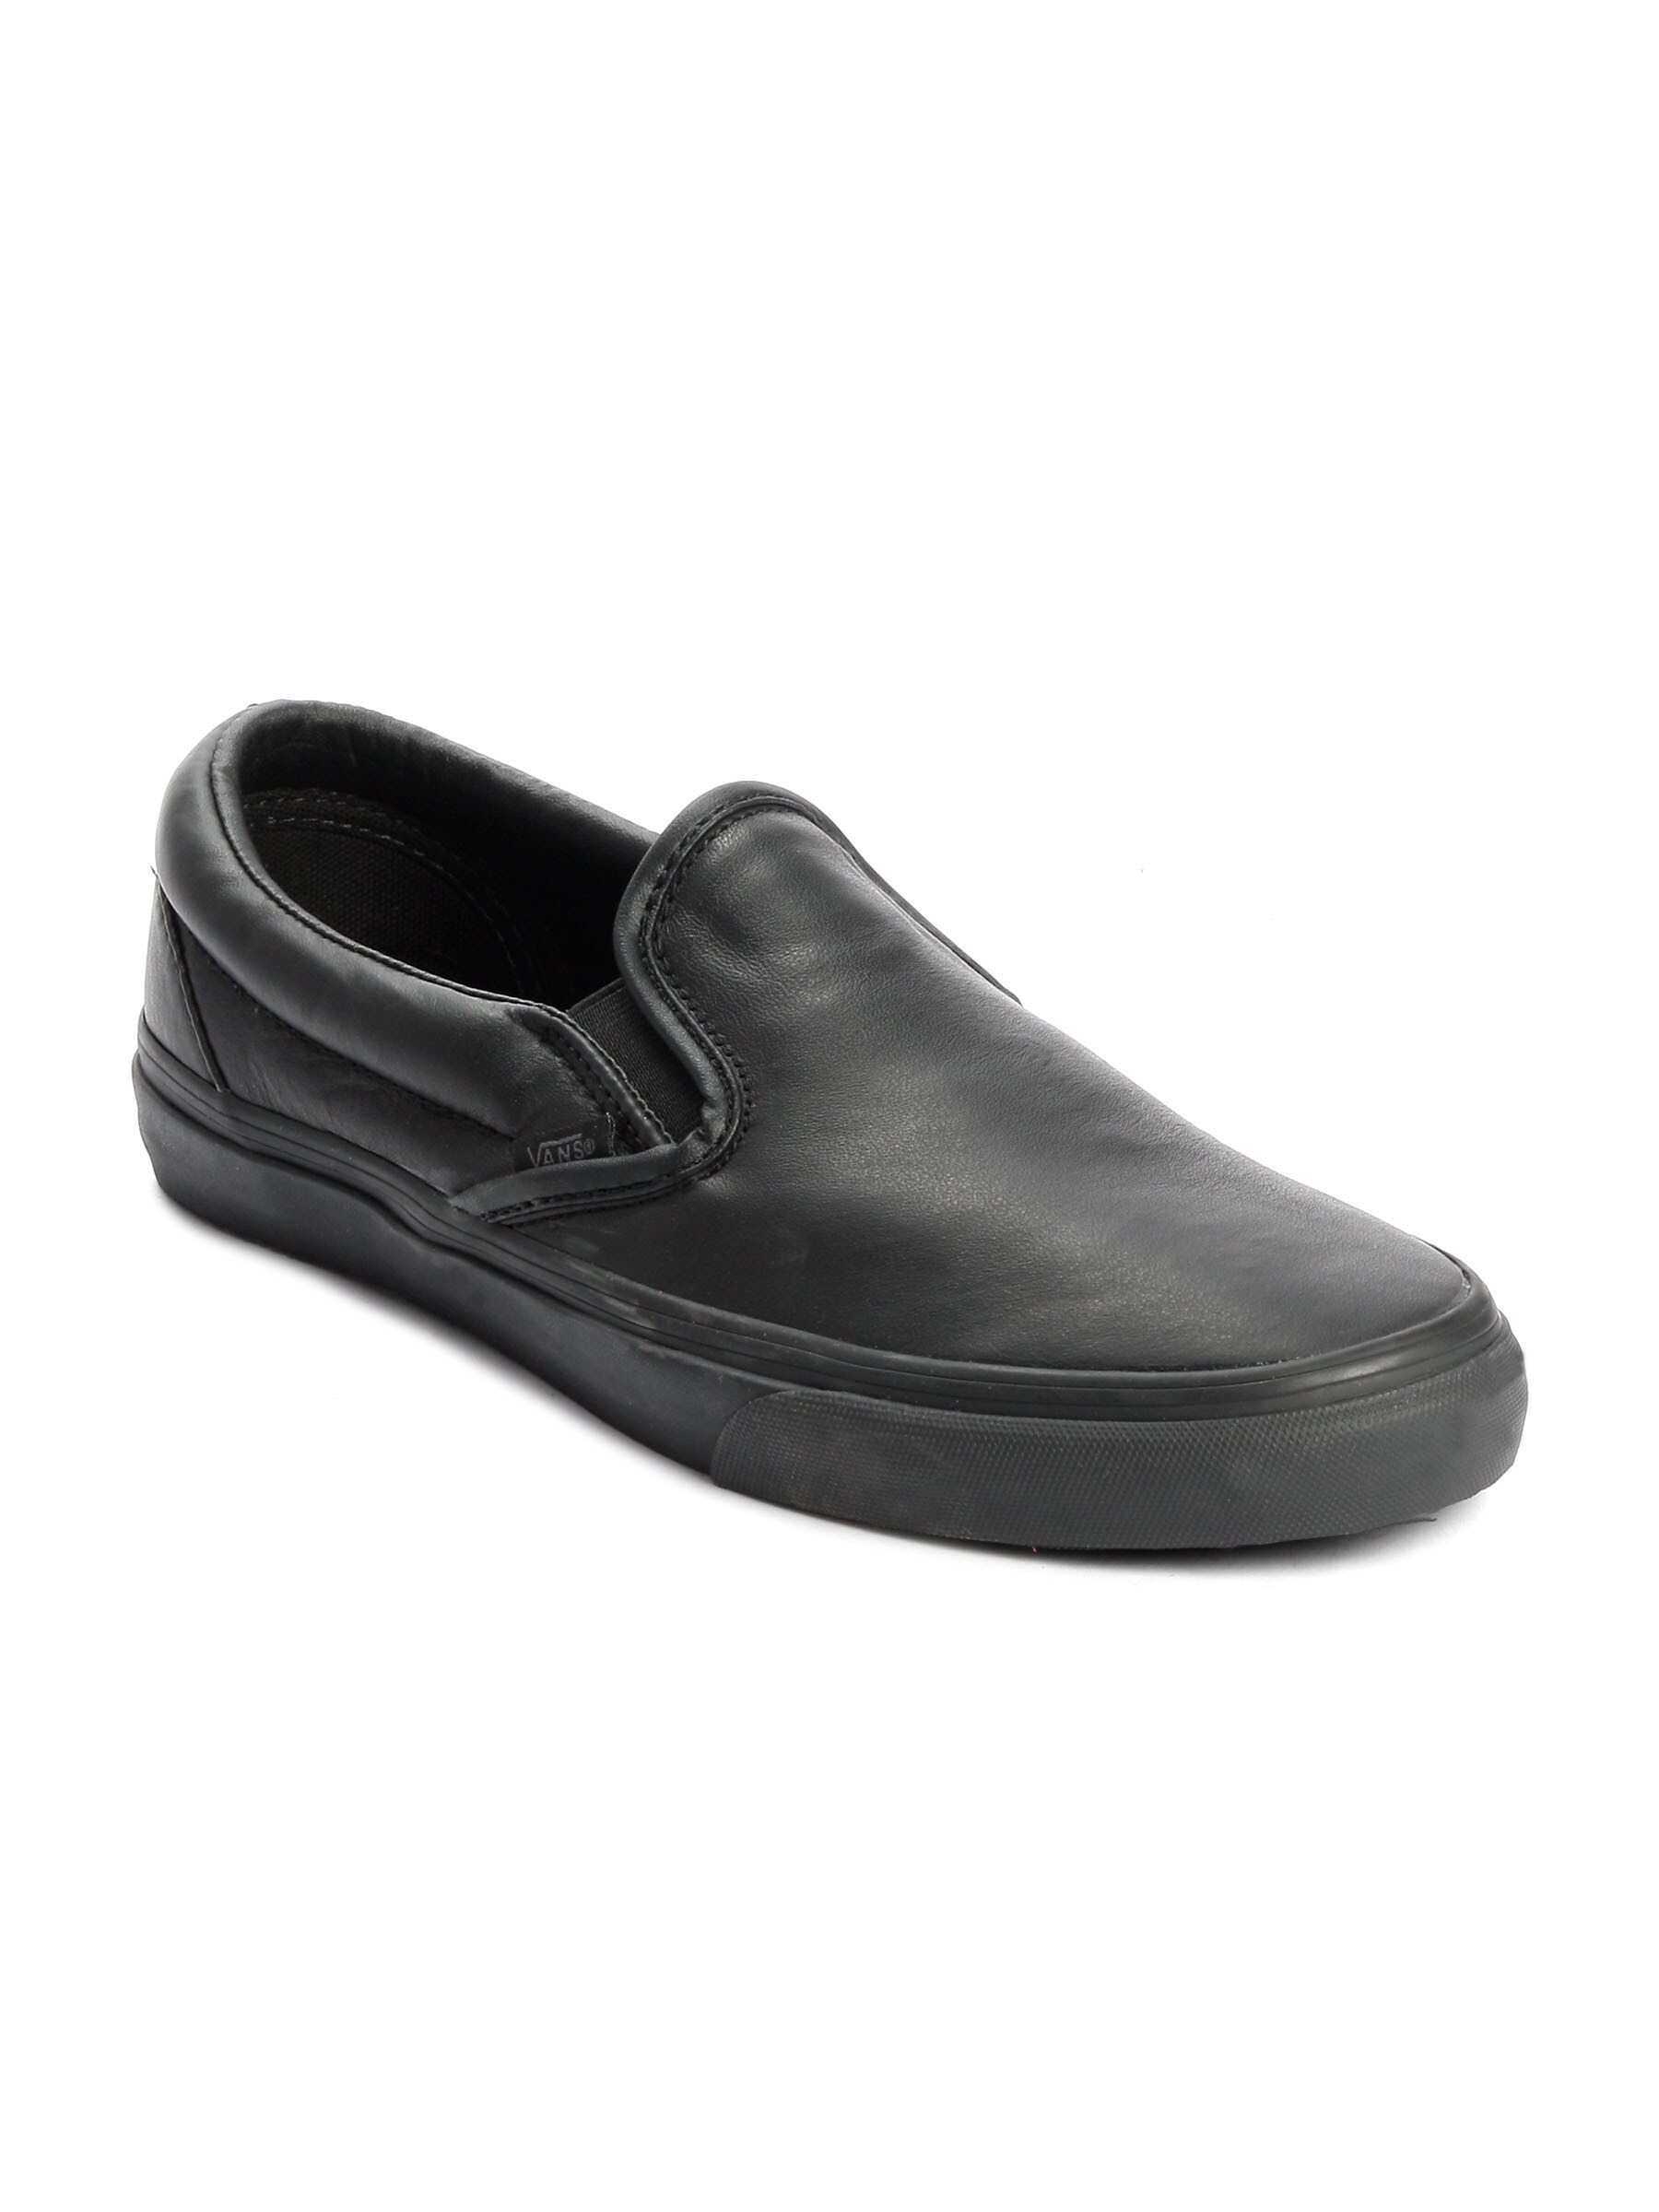 Vans Men Classic Slip-On Black Casual Shoes